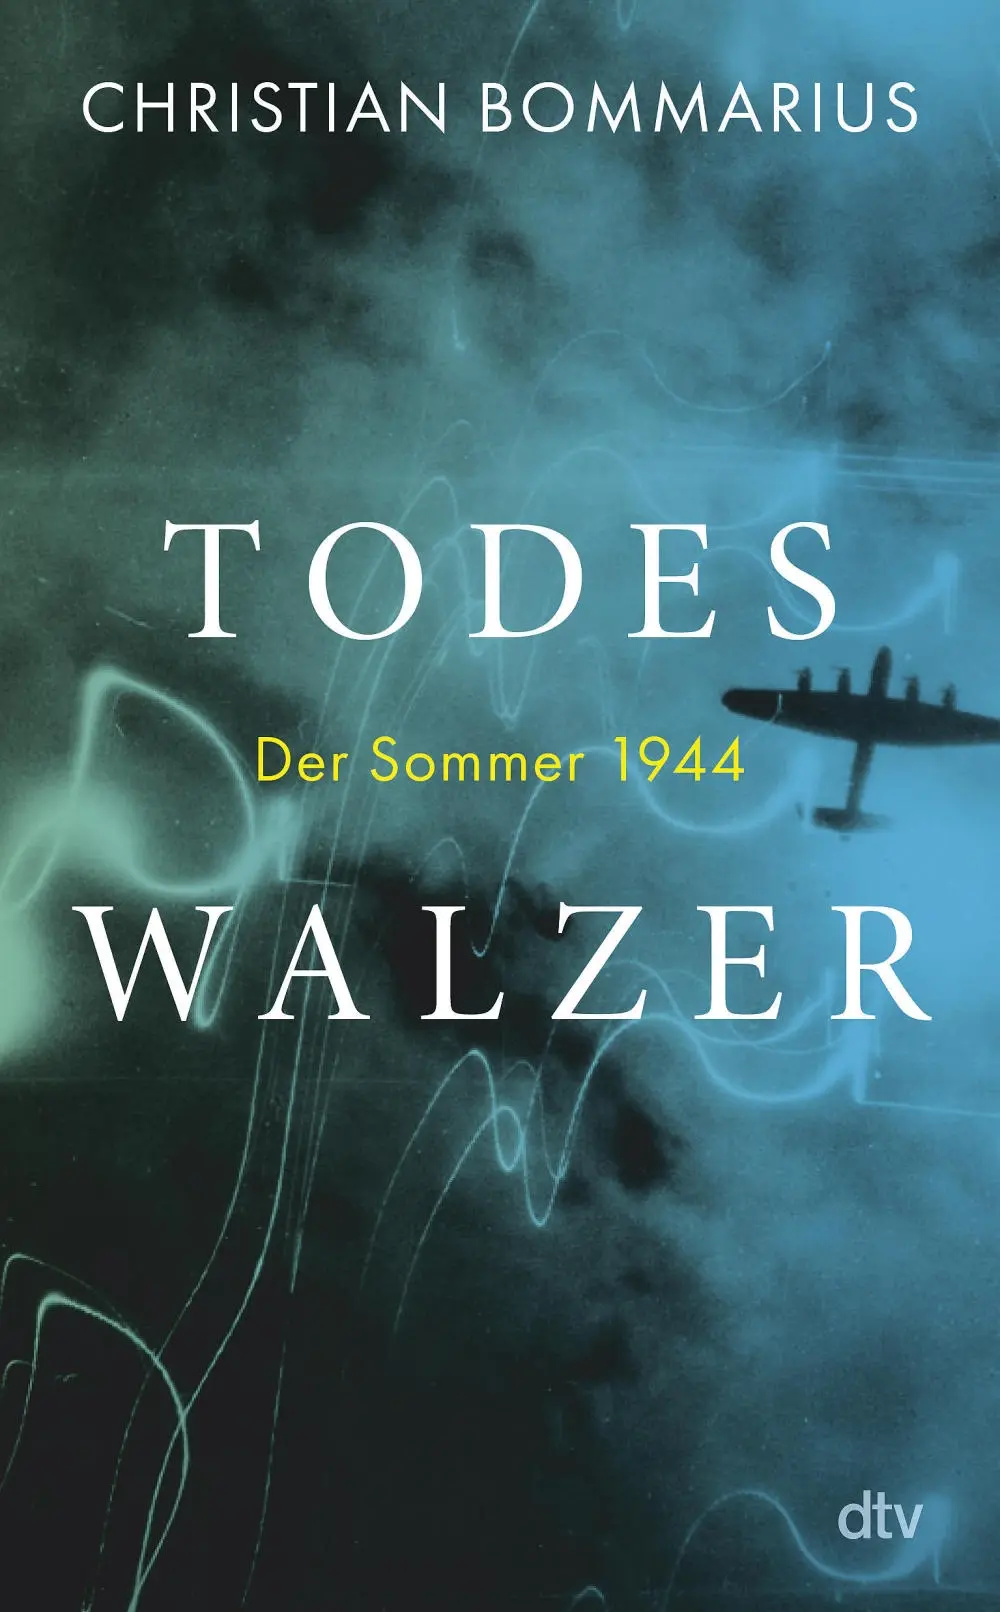 Buchcover: "Todeswalzer" von Christian Bommarius